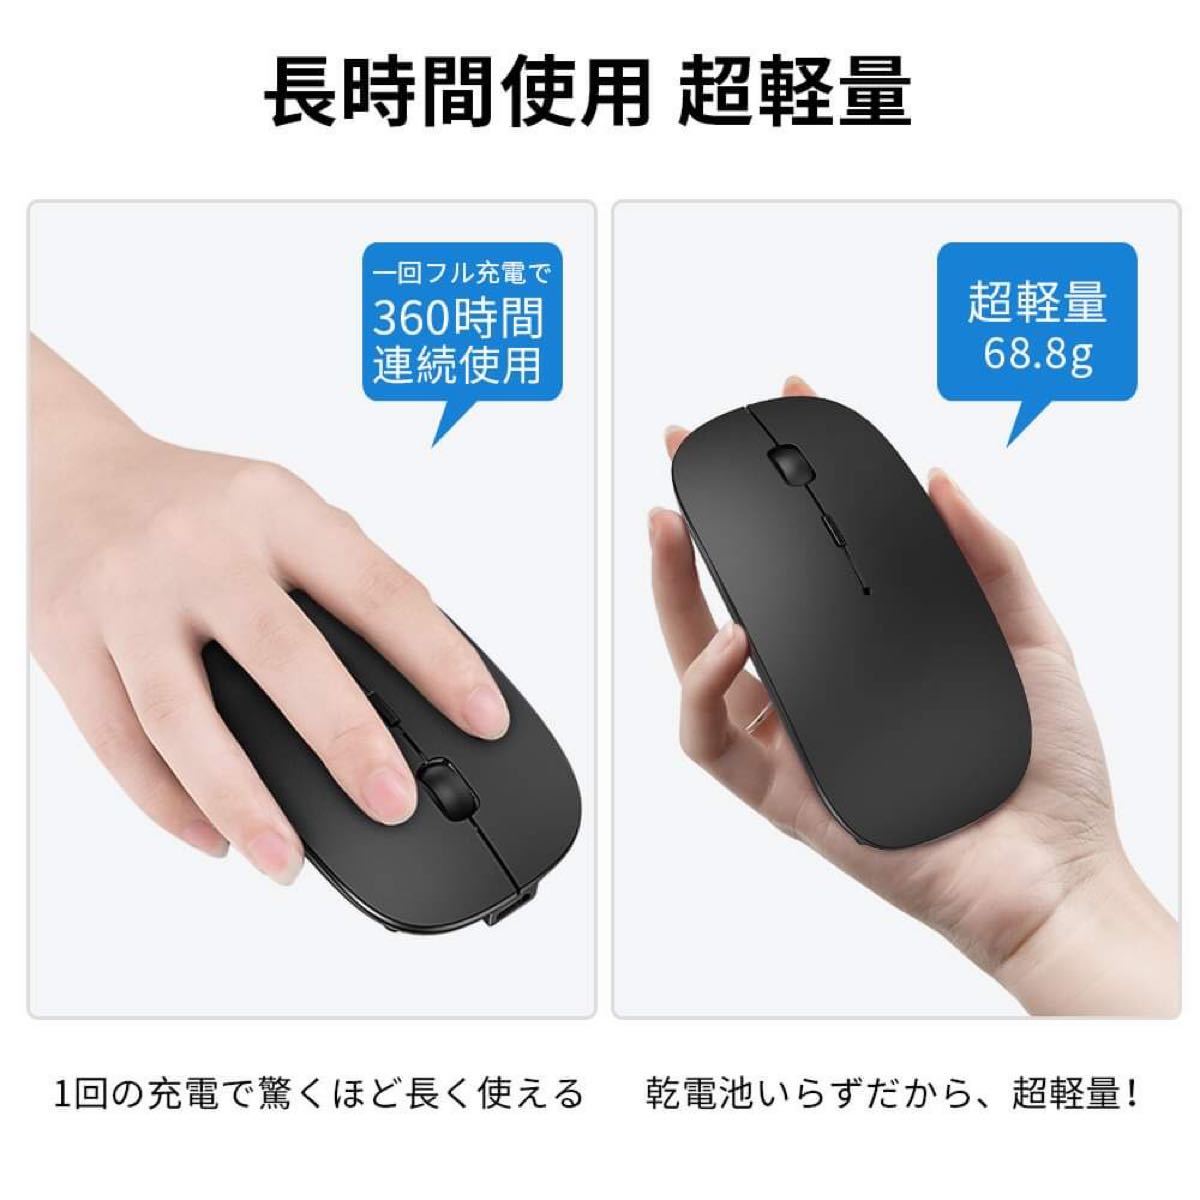 【新品】おしゃれなワイヤレスマウス 充電式